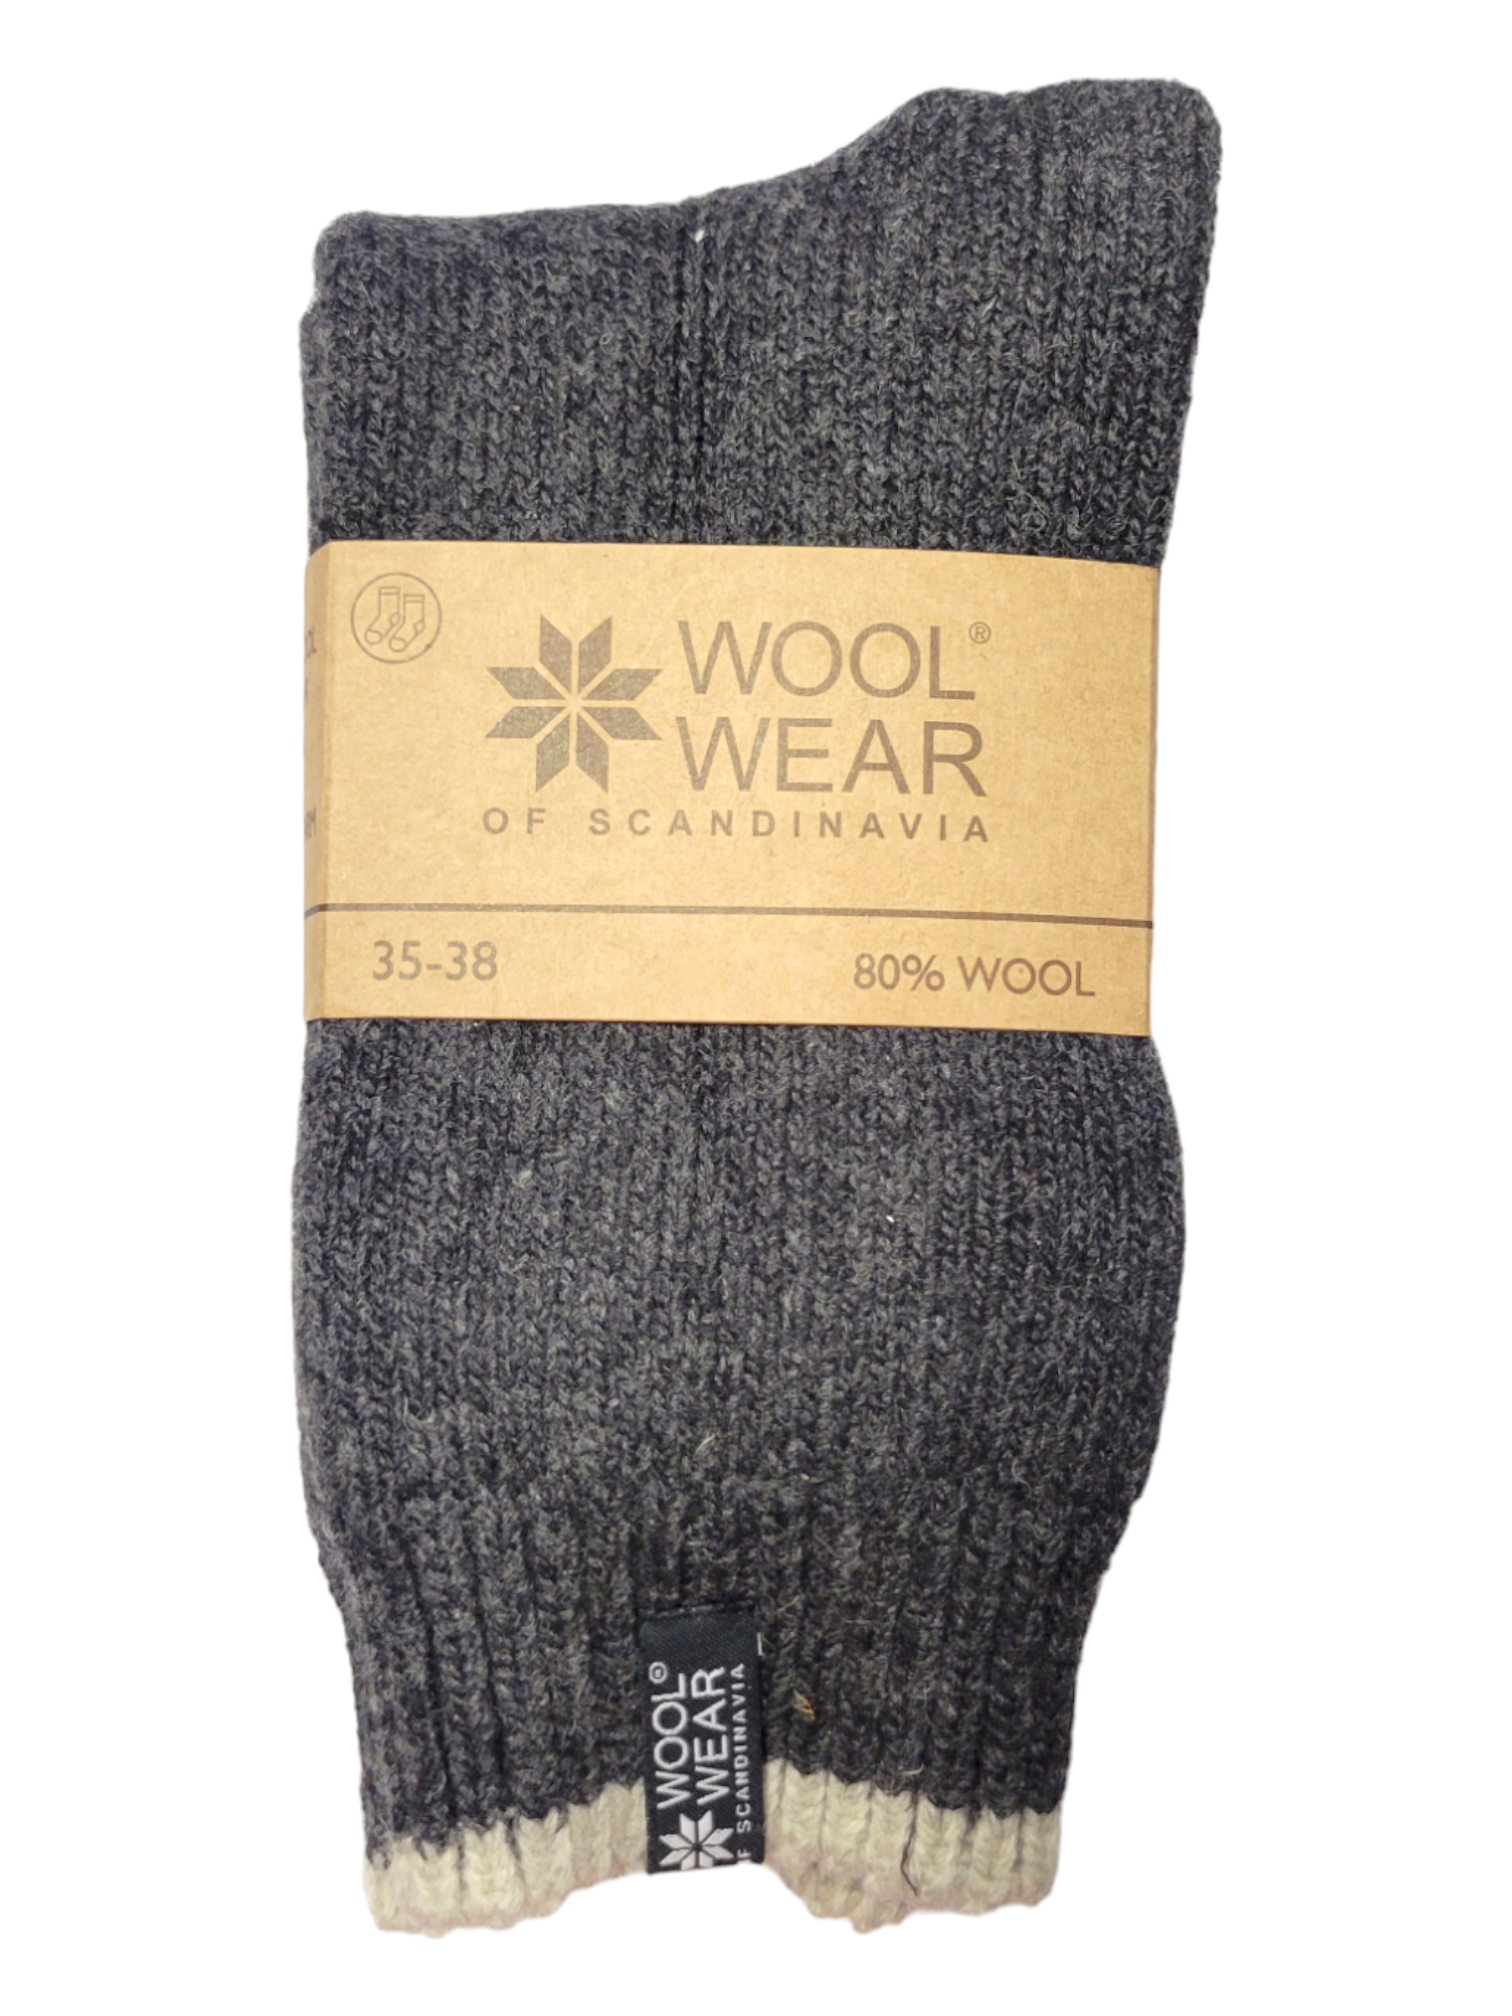 Socks: Wool Wear - Eskimo Charcoal, 80% Wool